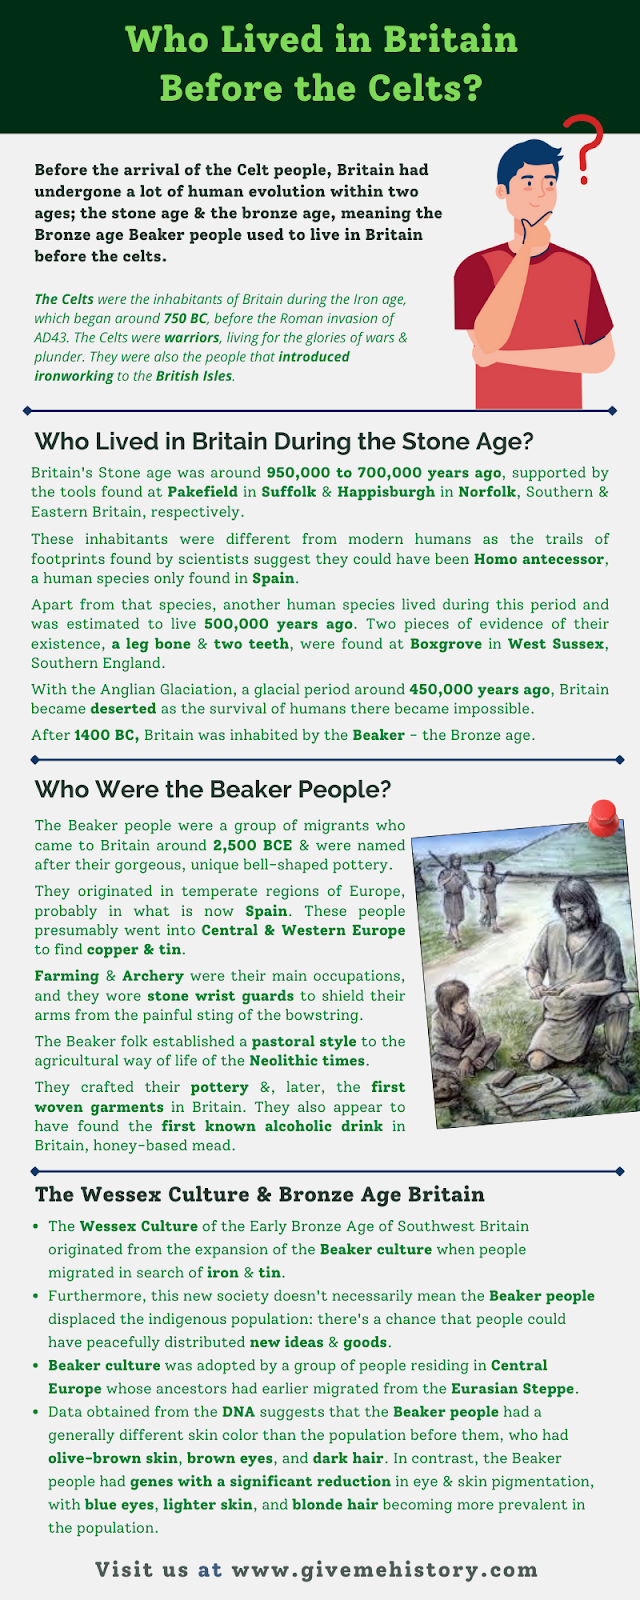 Kto żył w Brytanii przed Celtami?